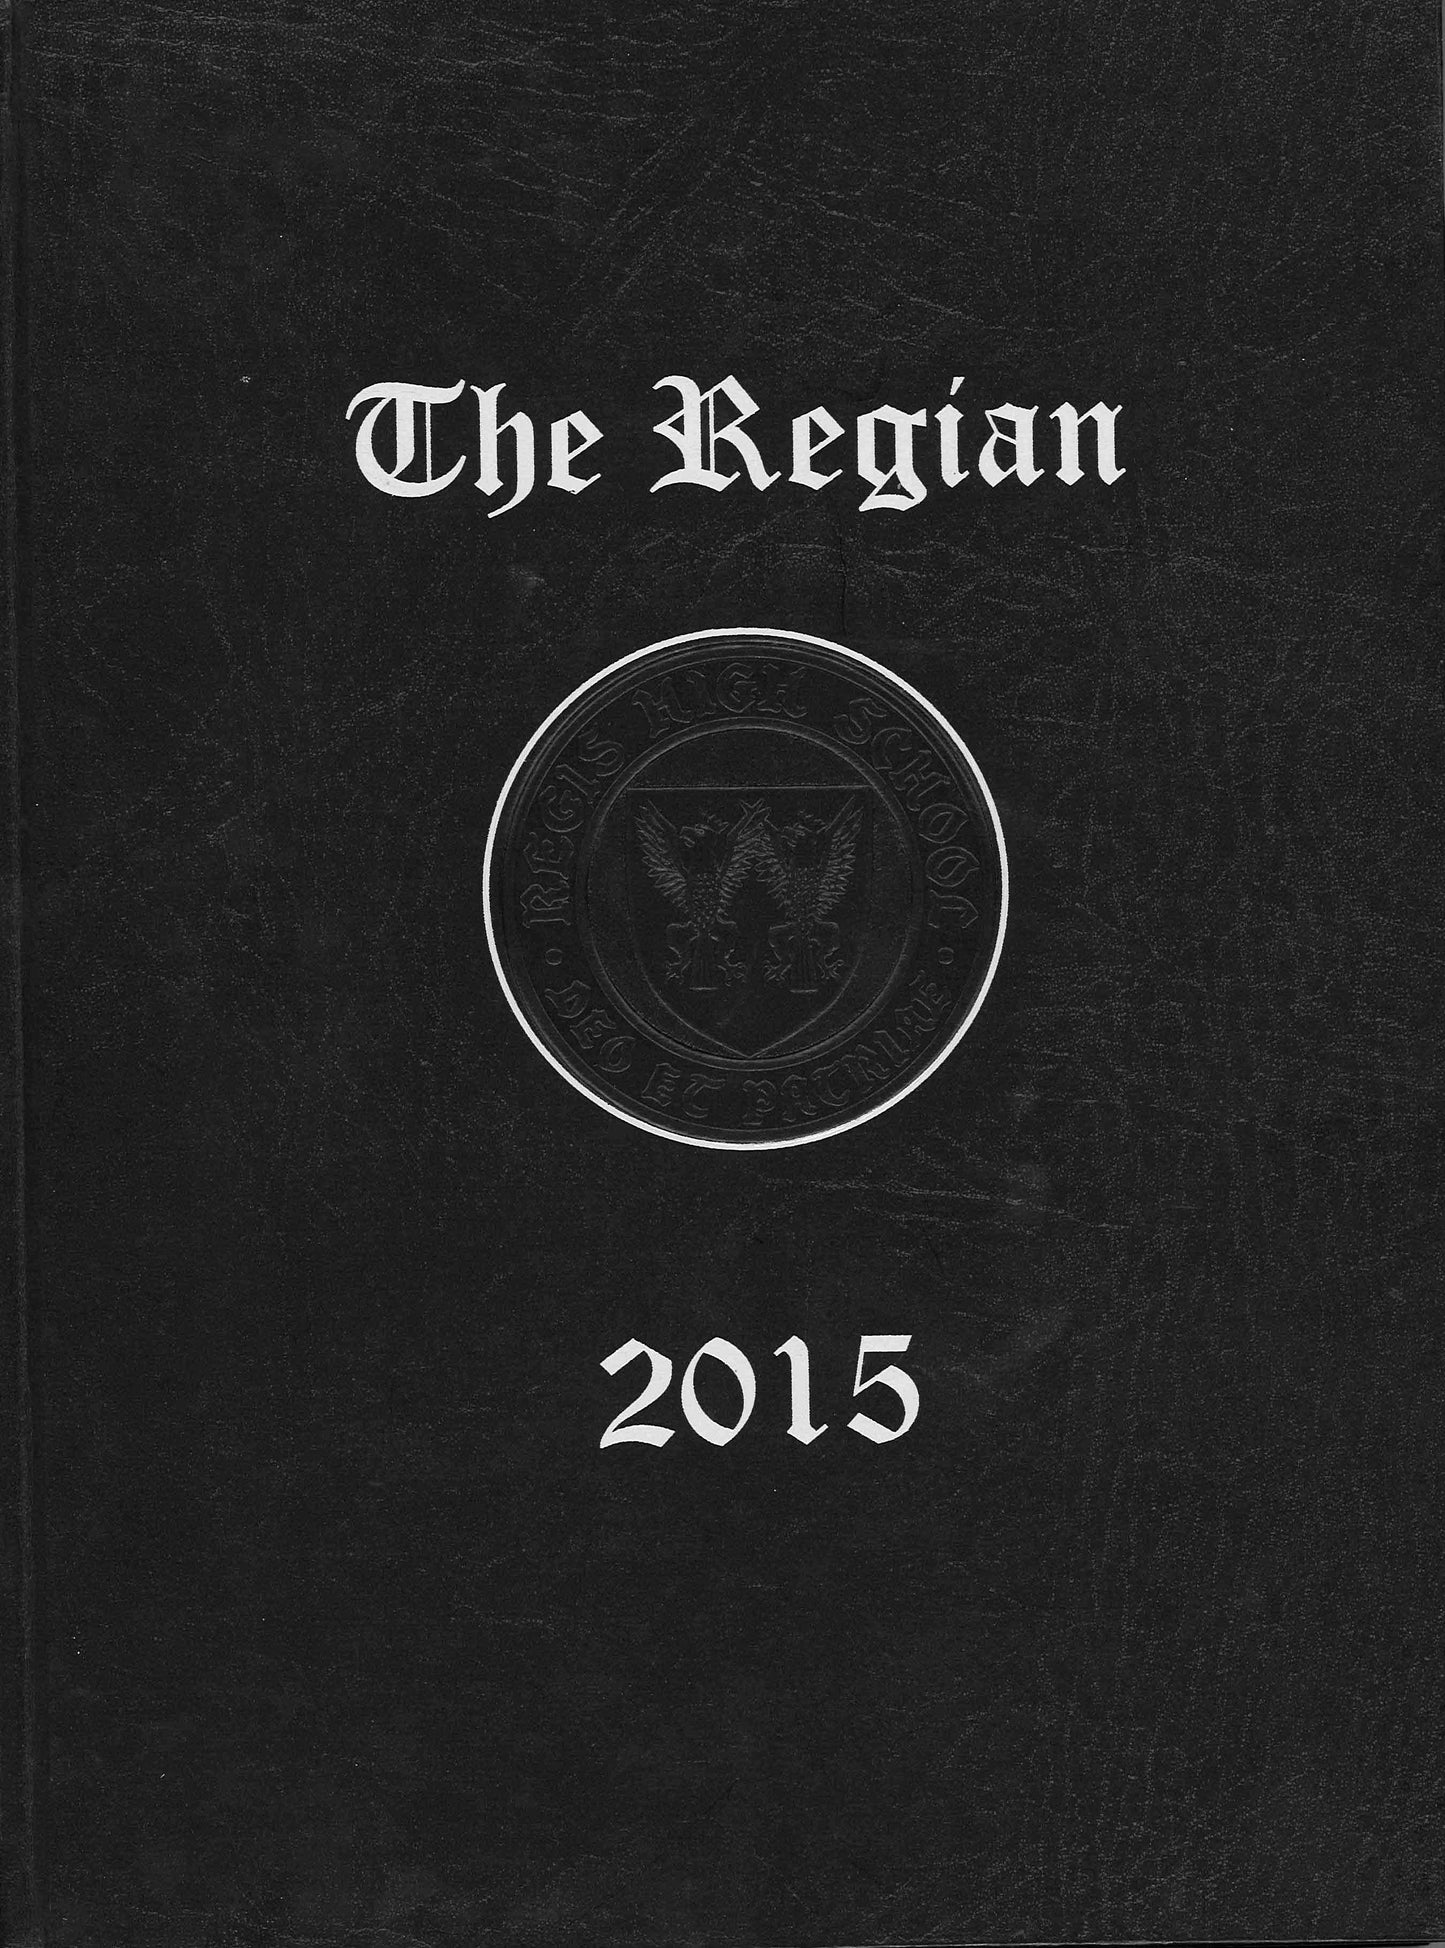 The Regian - 2015